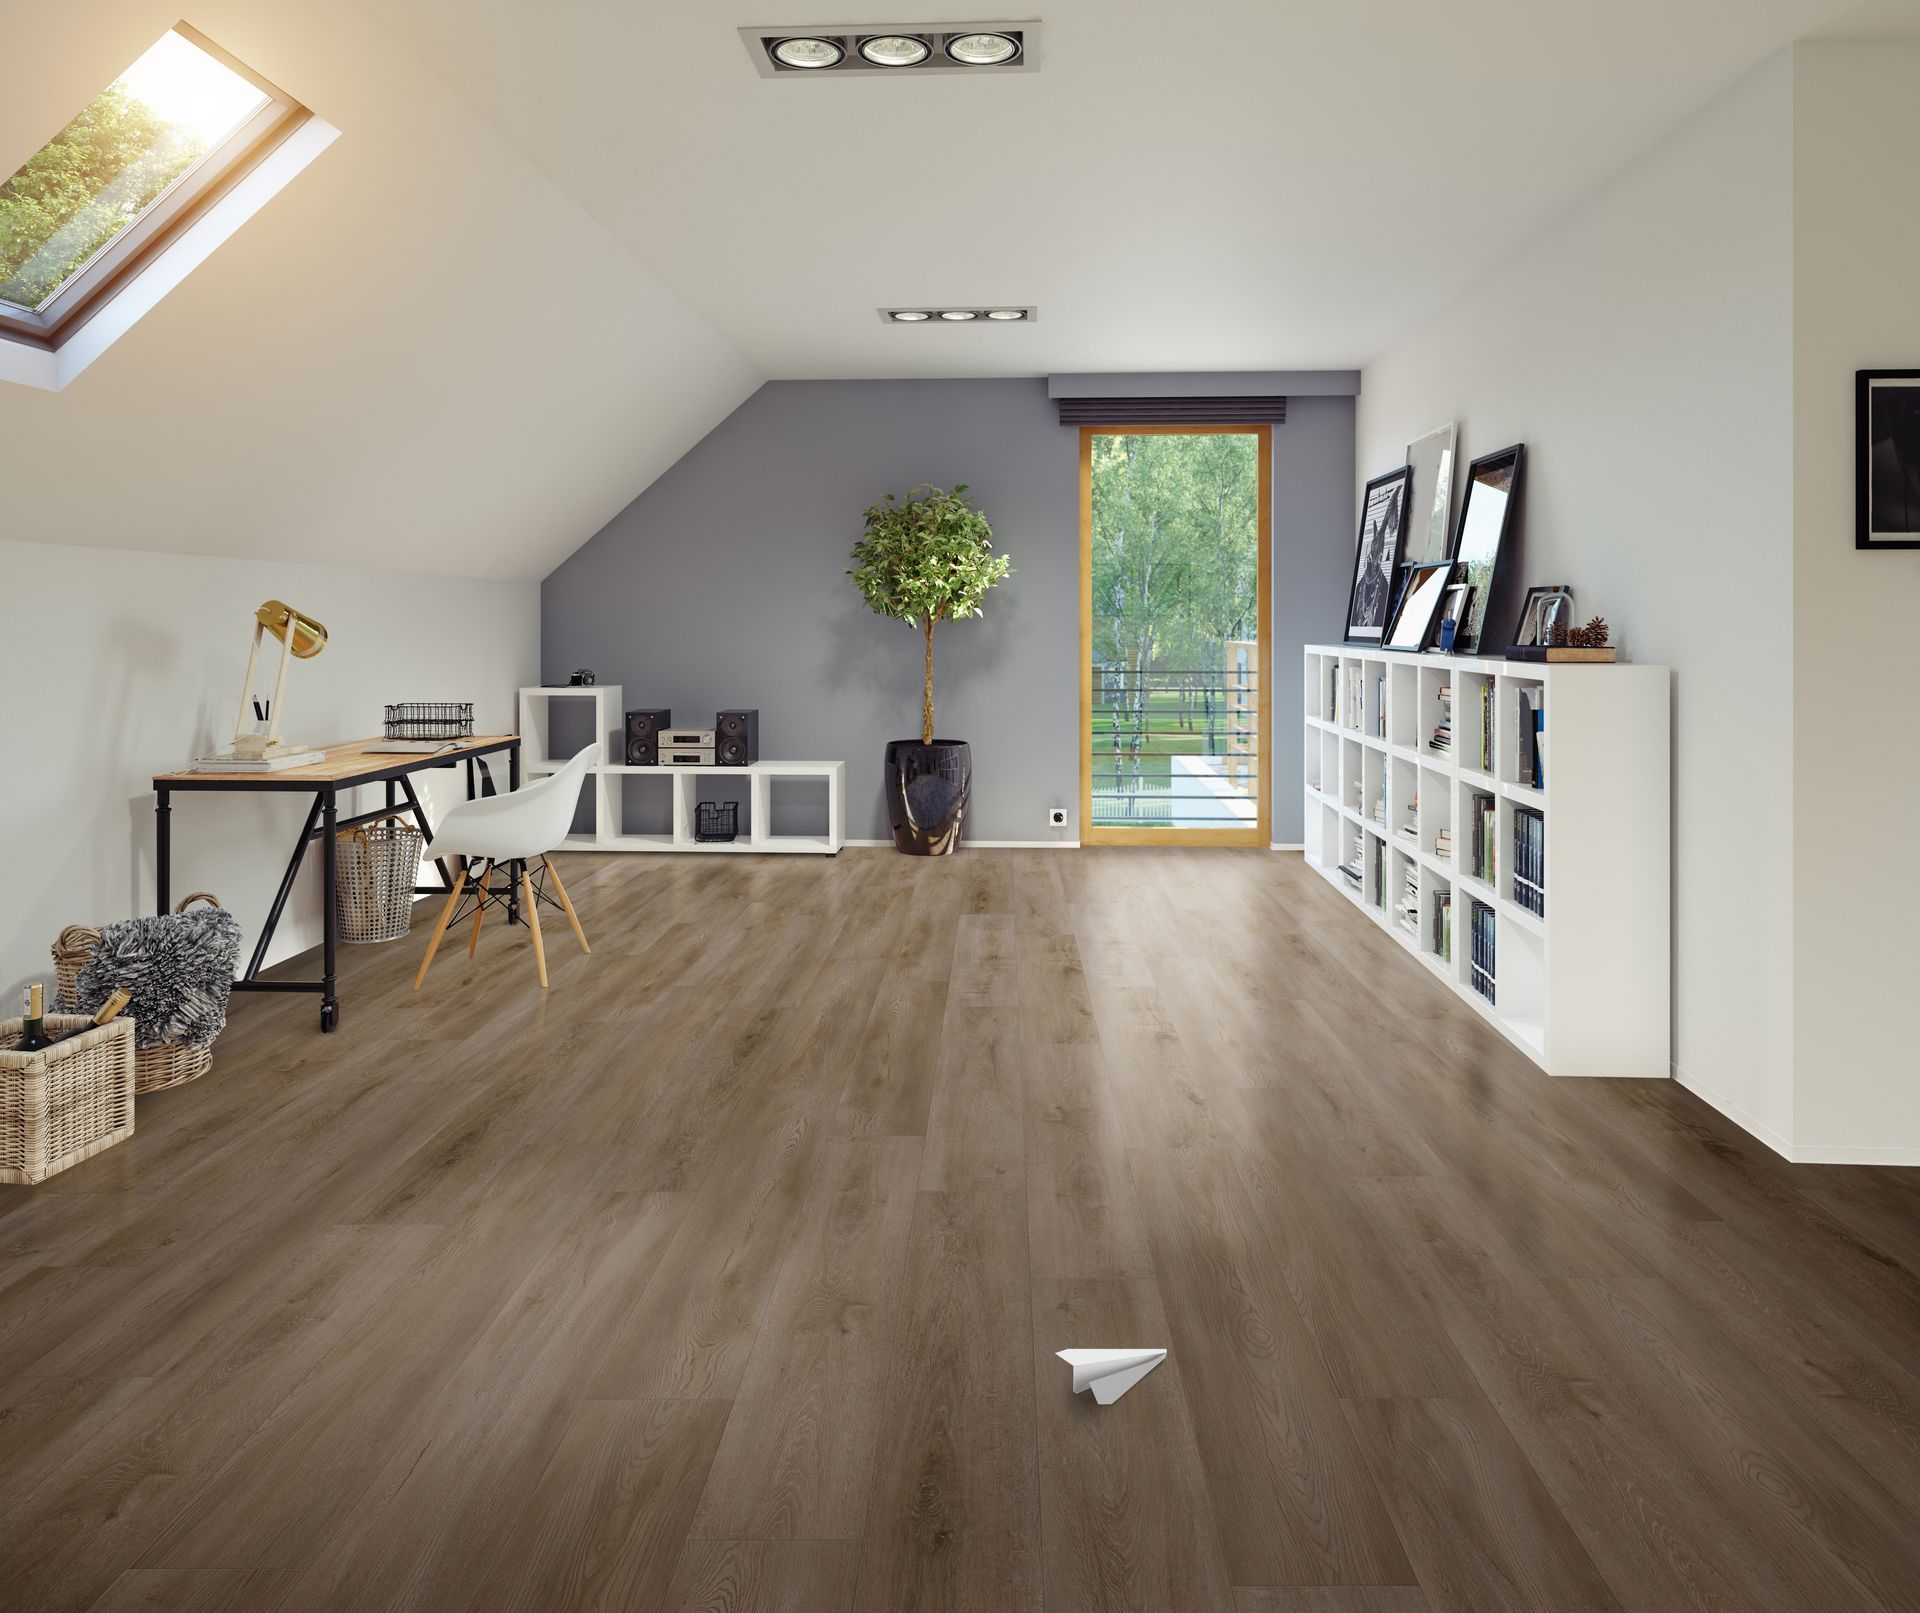 king tide vinyl tile flooring in home office